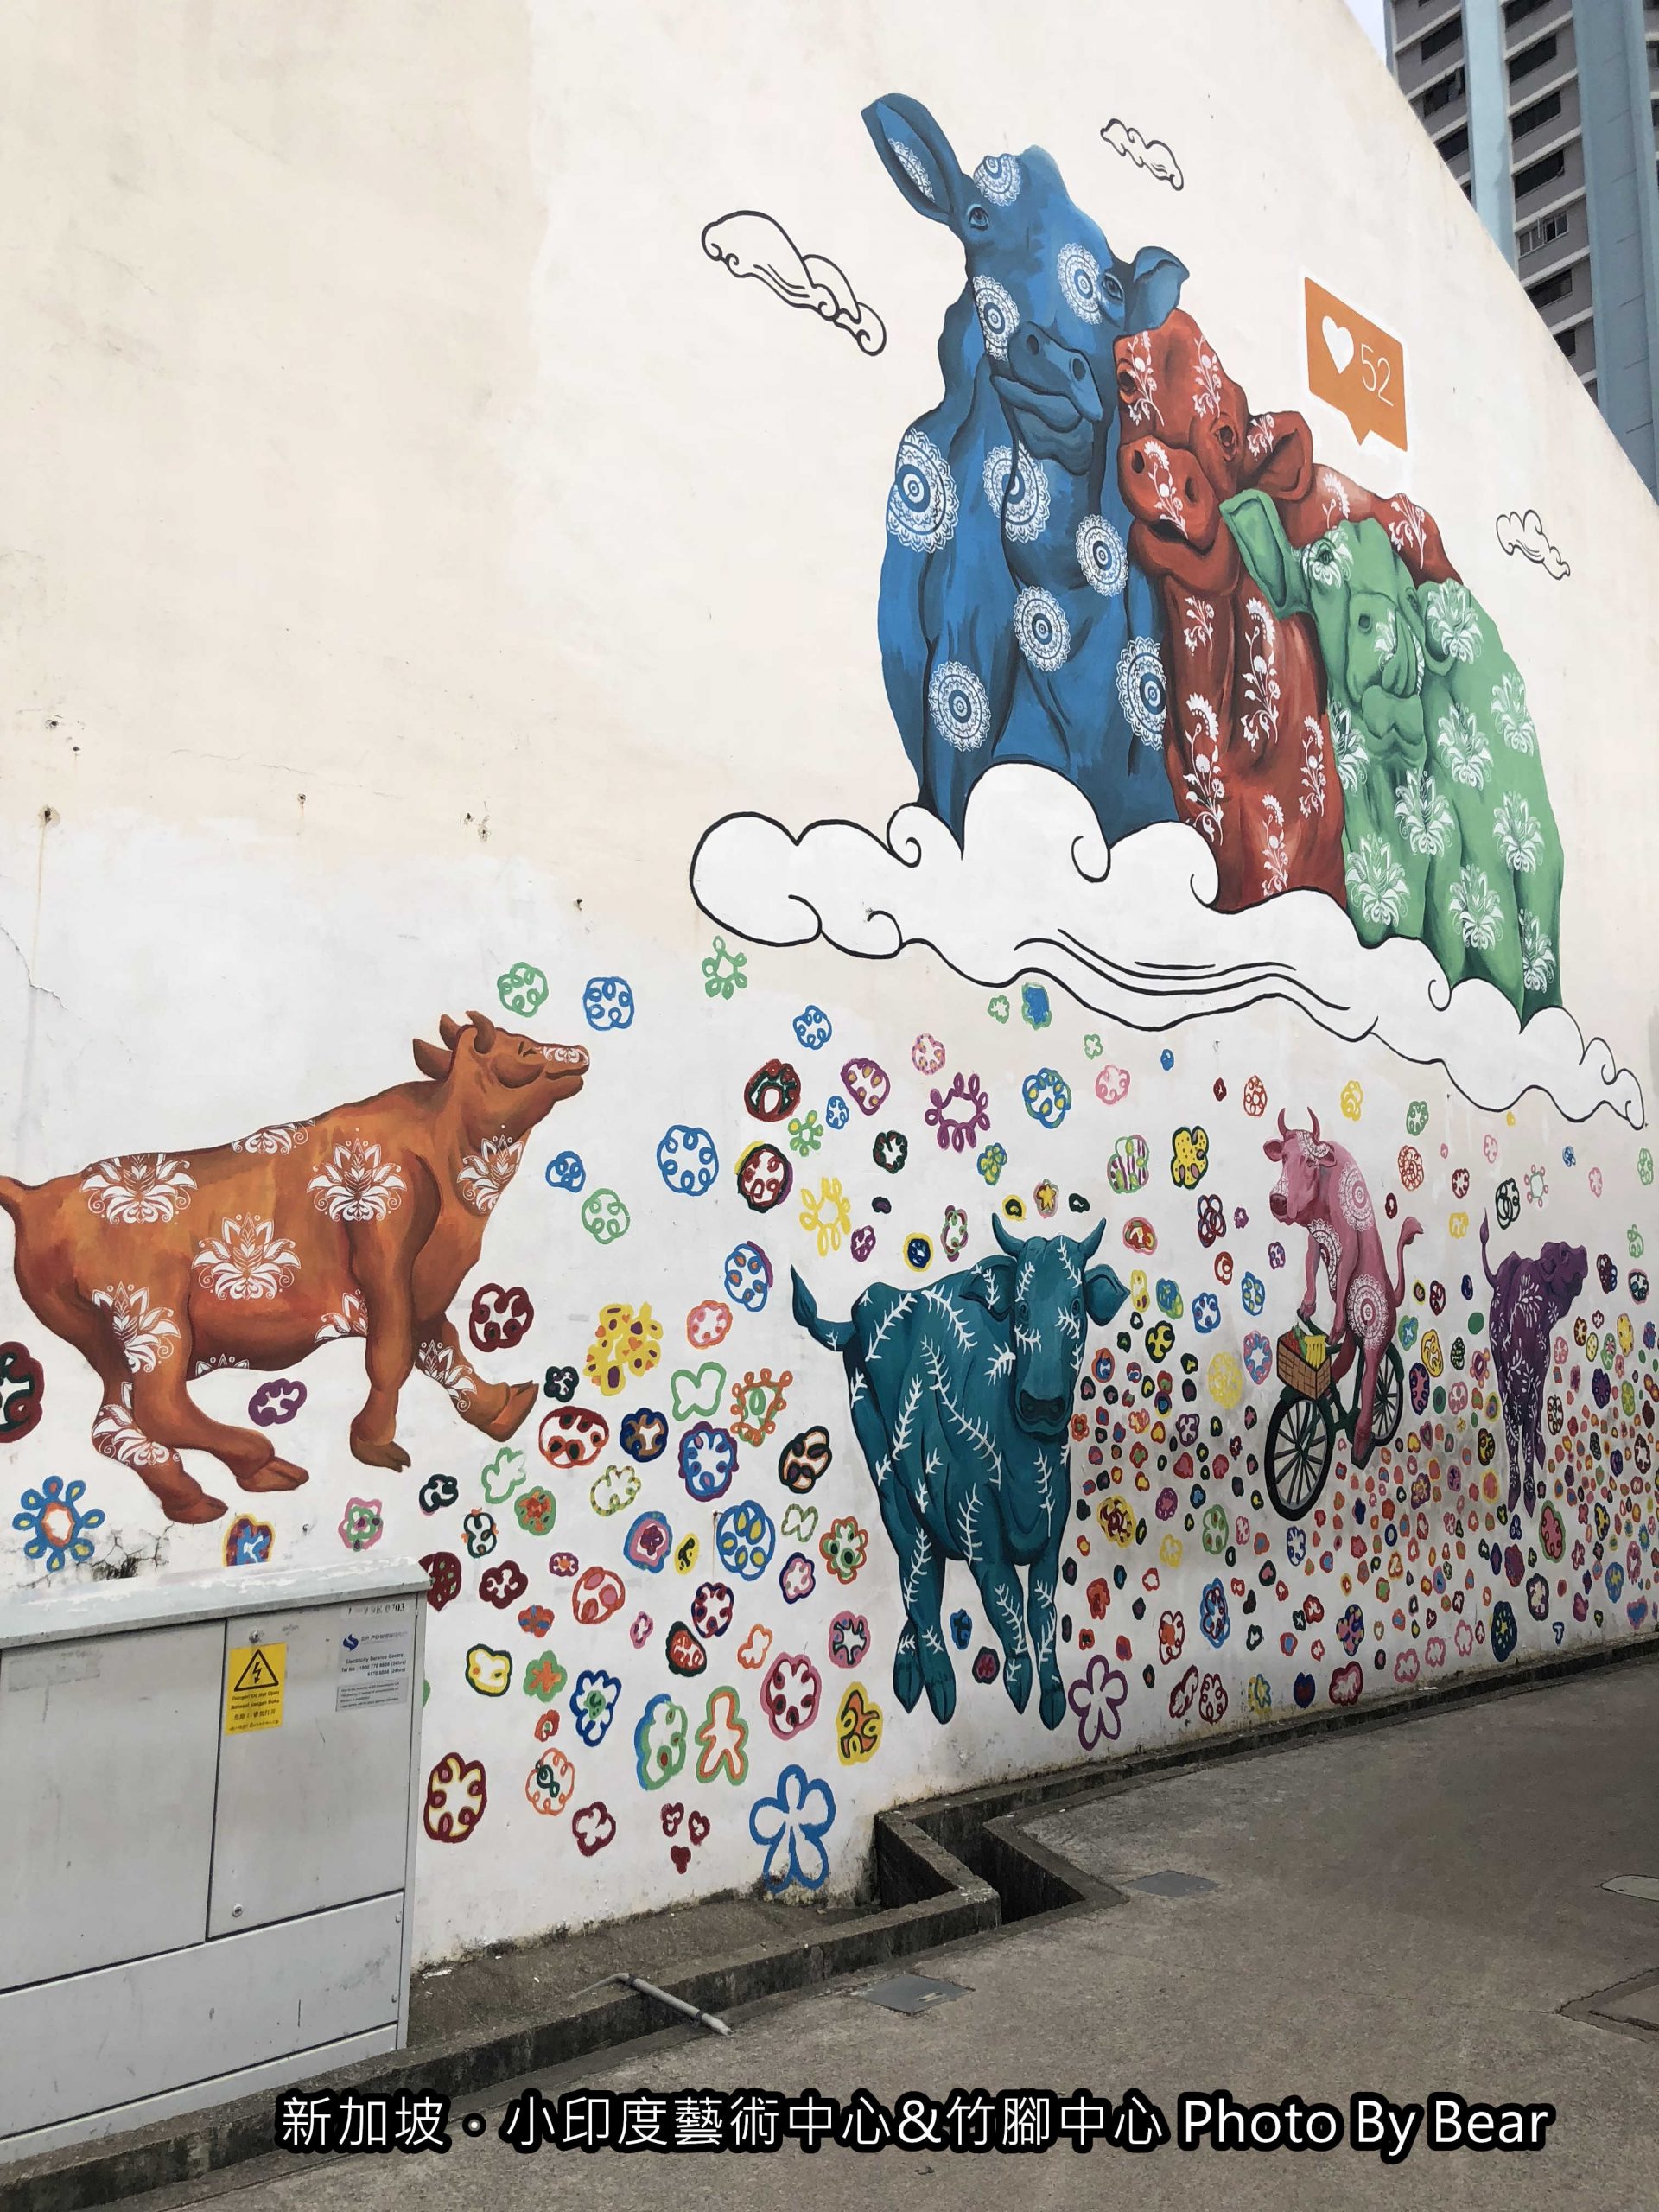 【2019新加坡自由行】「小印度藝術區 Little India Arts Belt．好好拍！濃厚異國風~繽紛色彩建築與彩繪牆（實龍崗路/小印度拱廊/陳東齡故居）」